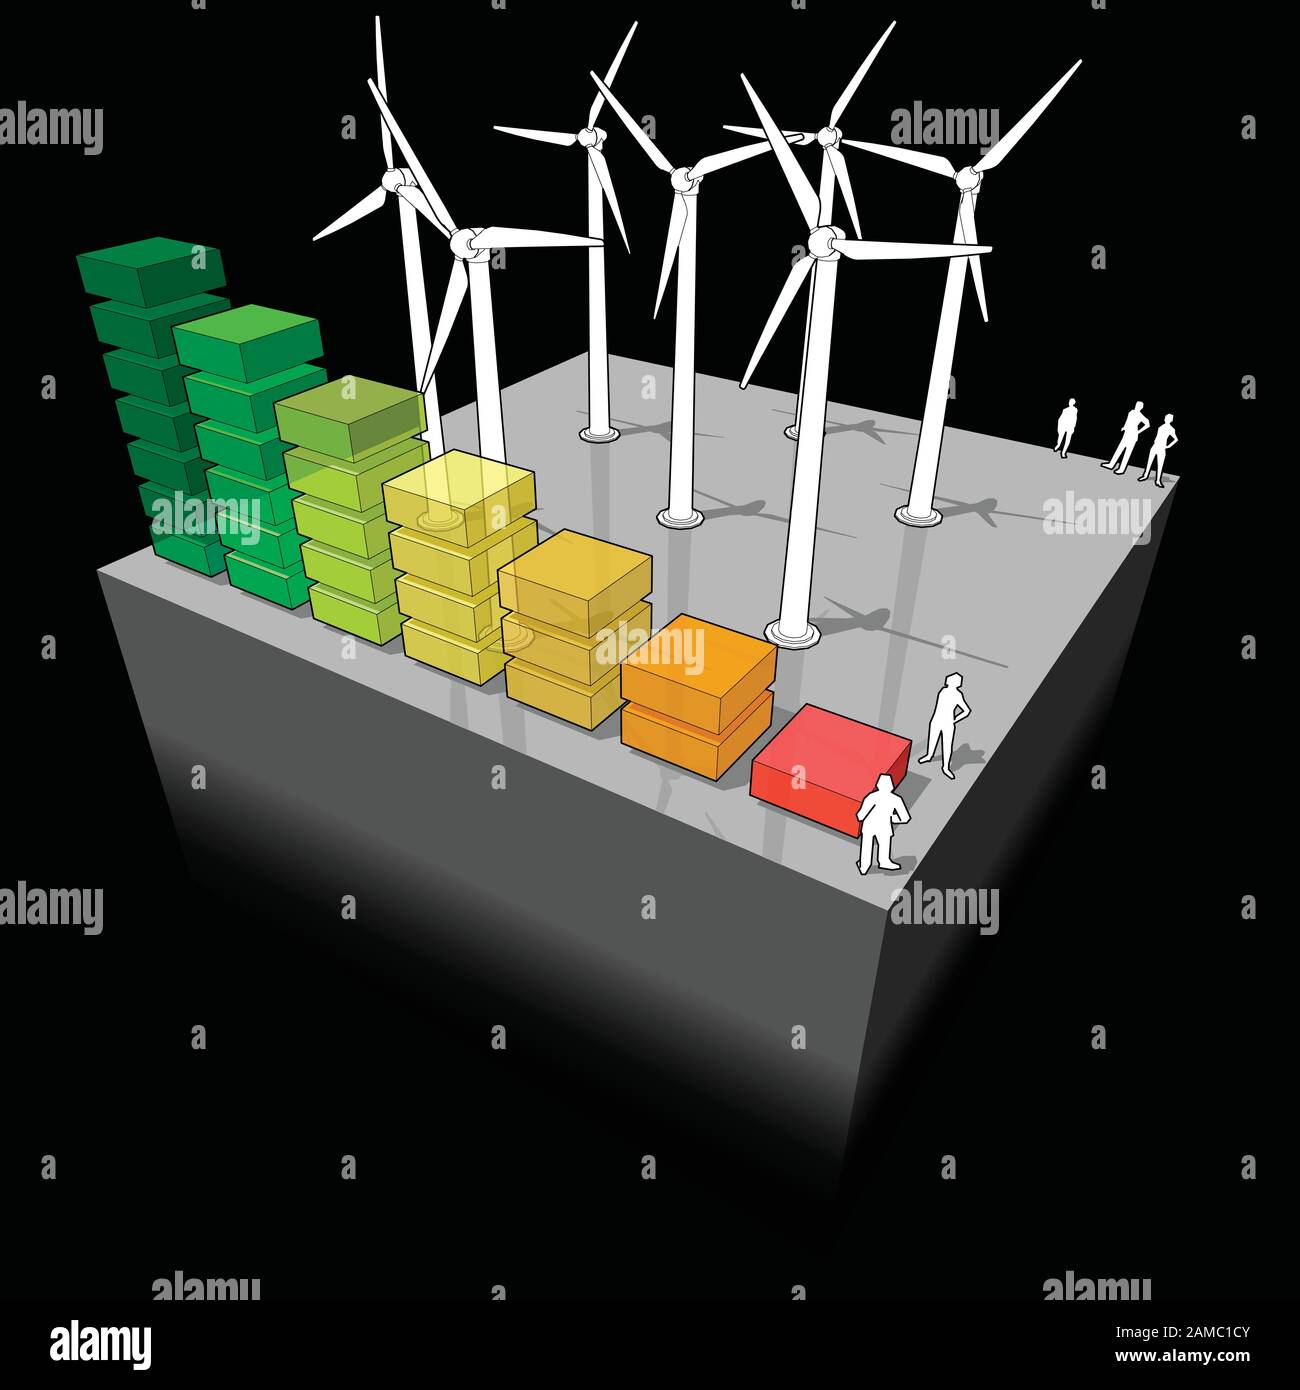 Schéma d'une ferme éolienne avec schéma de classification d'énergie Illustration de Vecteur